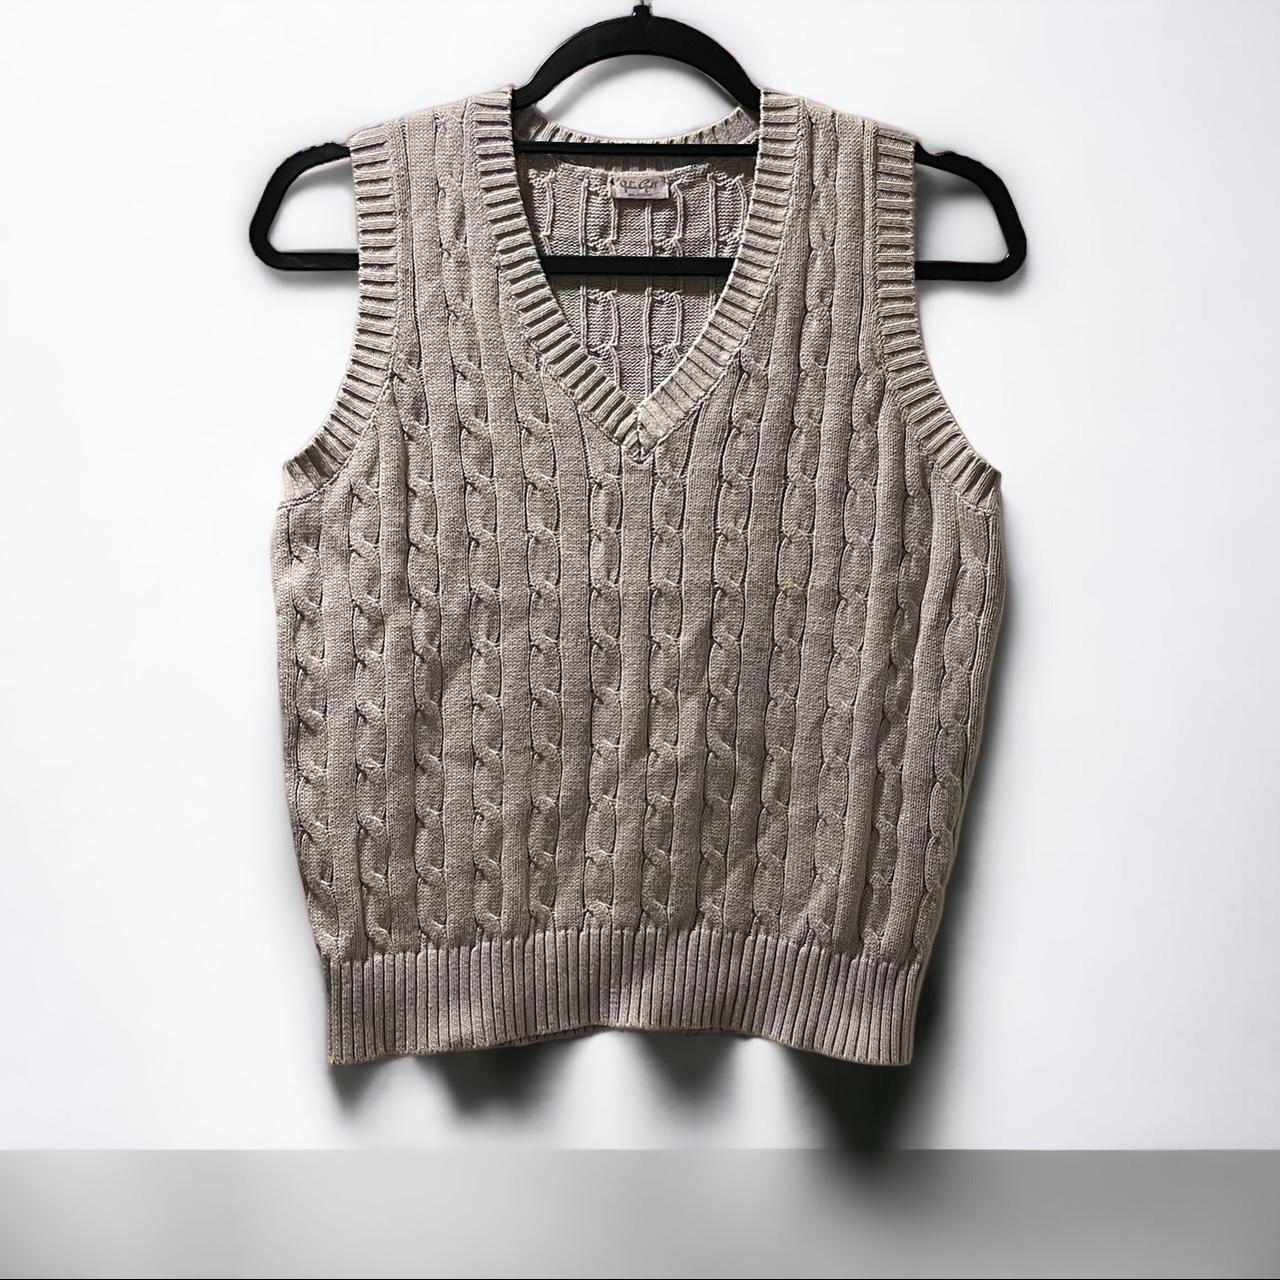 Brandy Melville grey v-neck sweater. Size small. - Depop